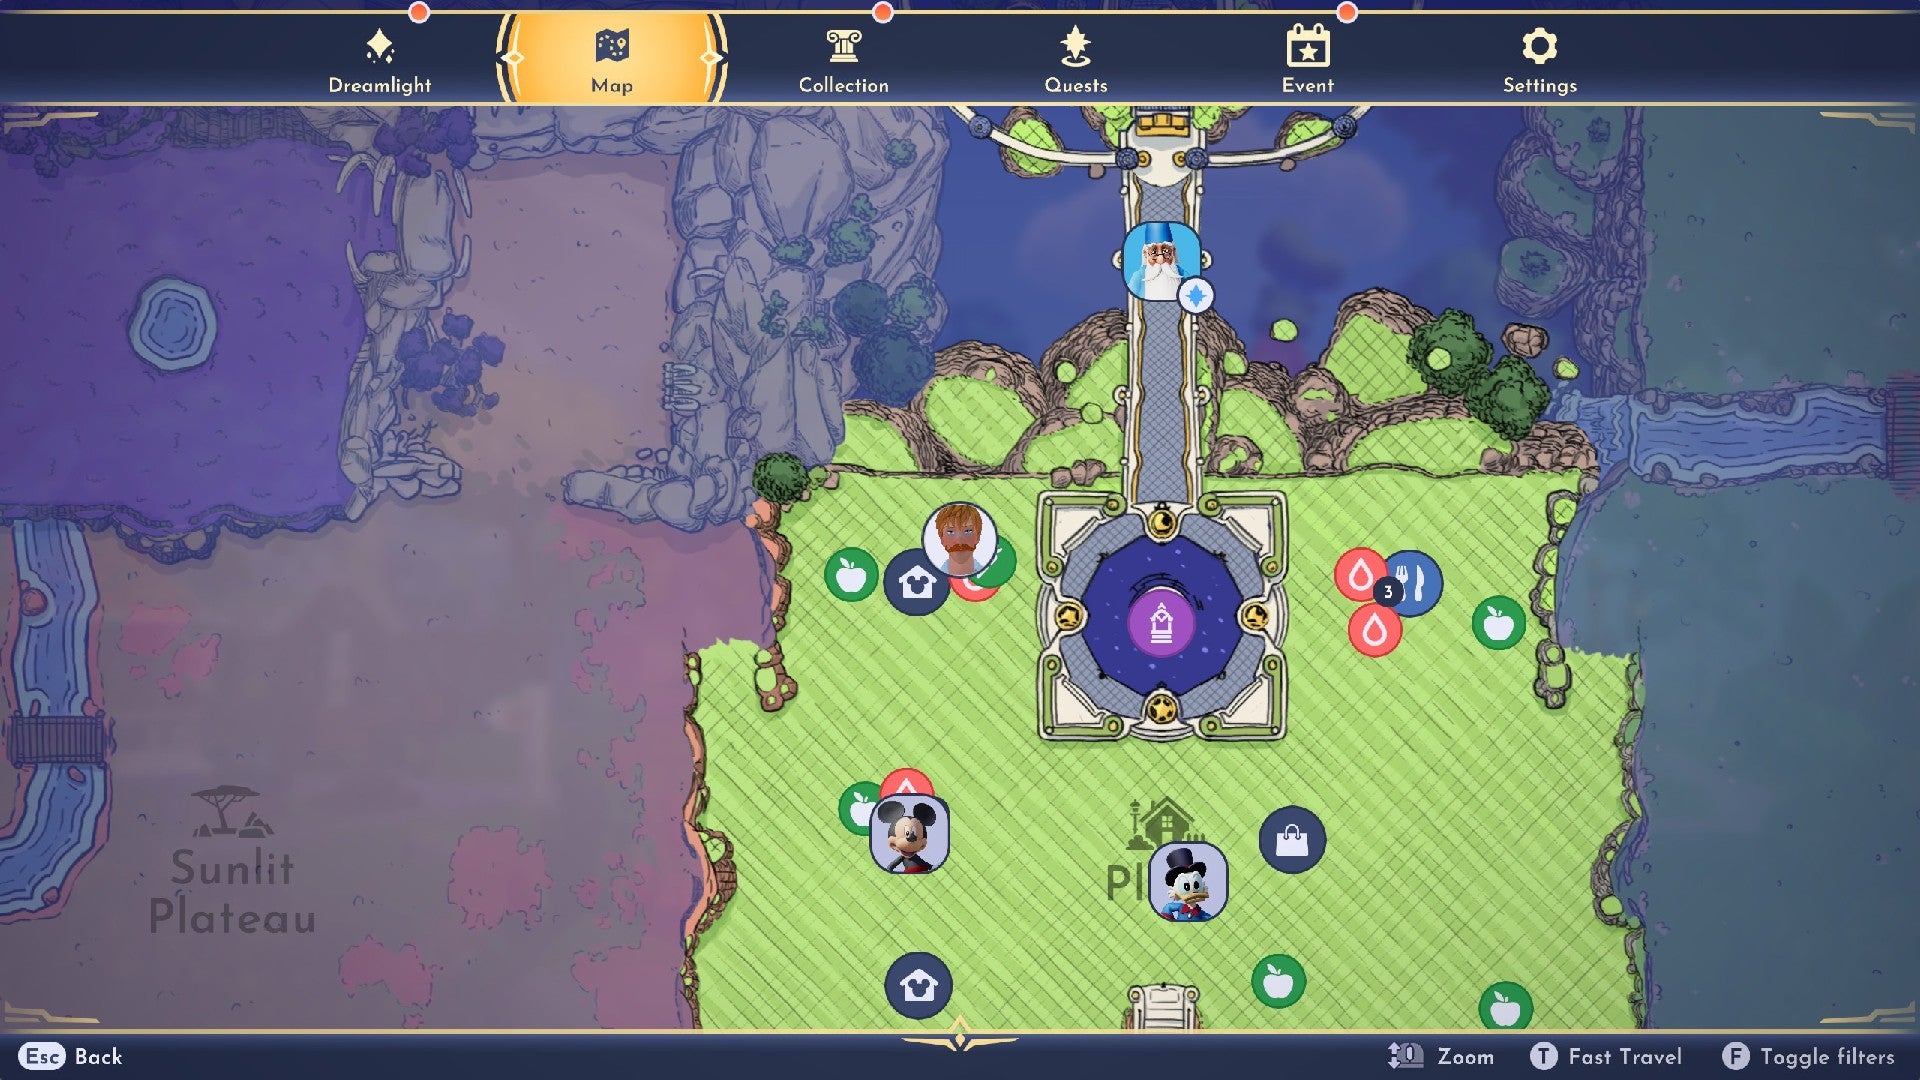 Captura de pantalla de Disney Dreamlight Valley que muestra varios íconos en la Plaza, con el jugador ubicado junto a su casa en la esquina superior izquierda.